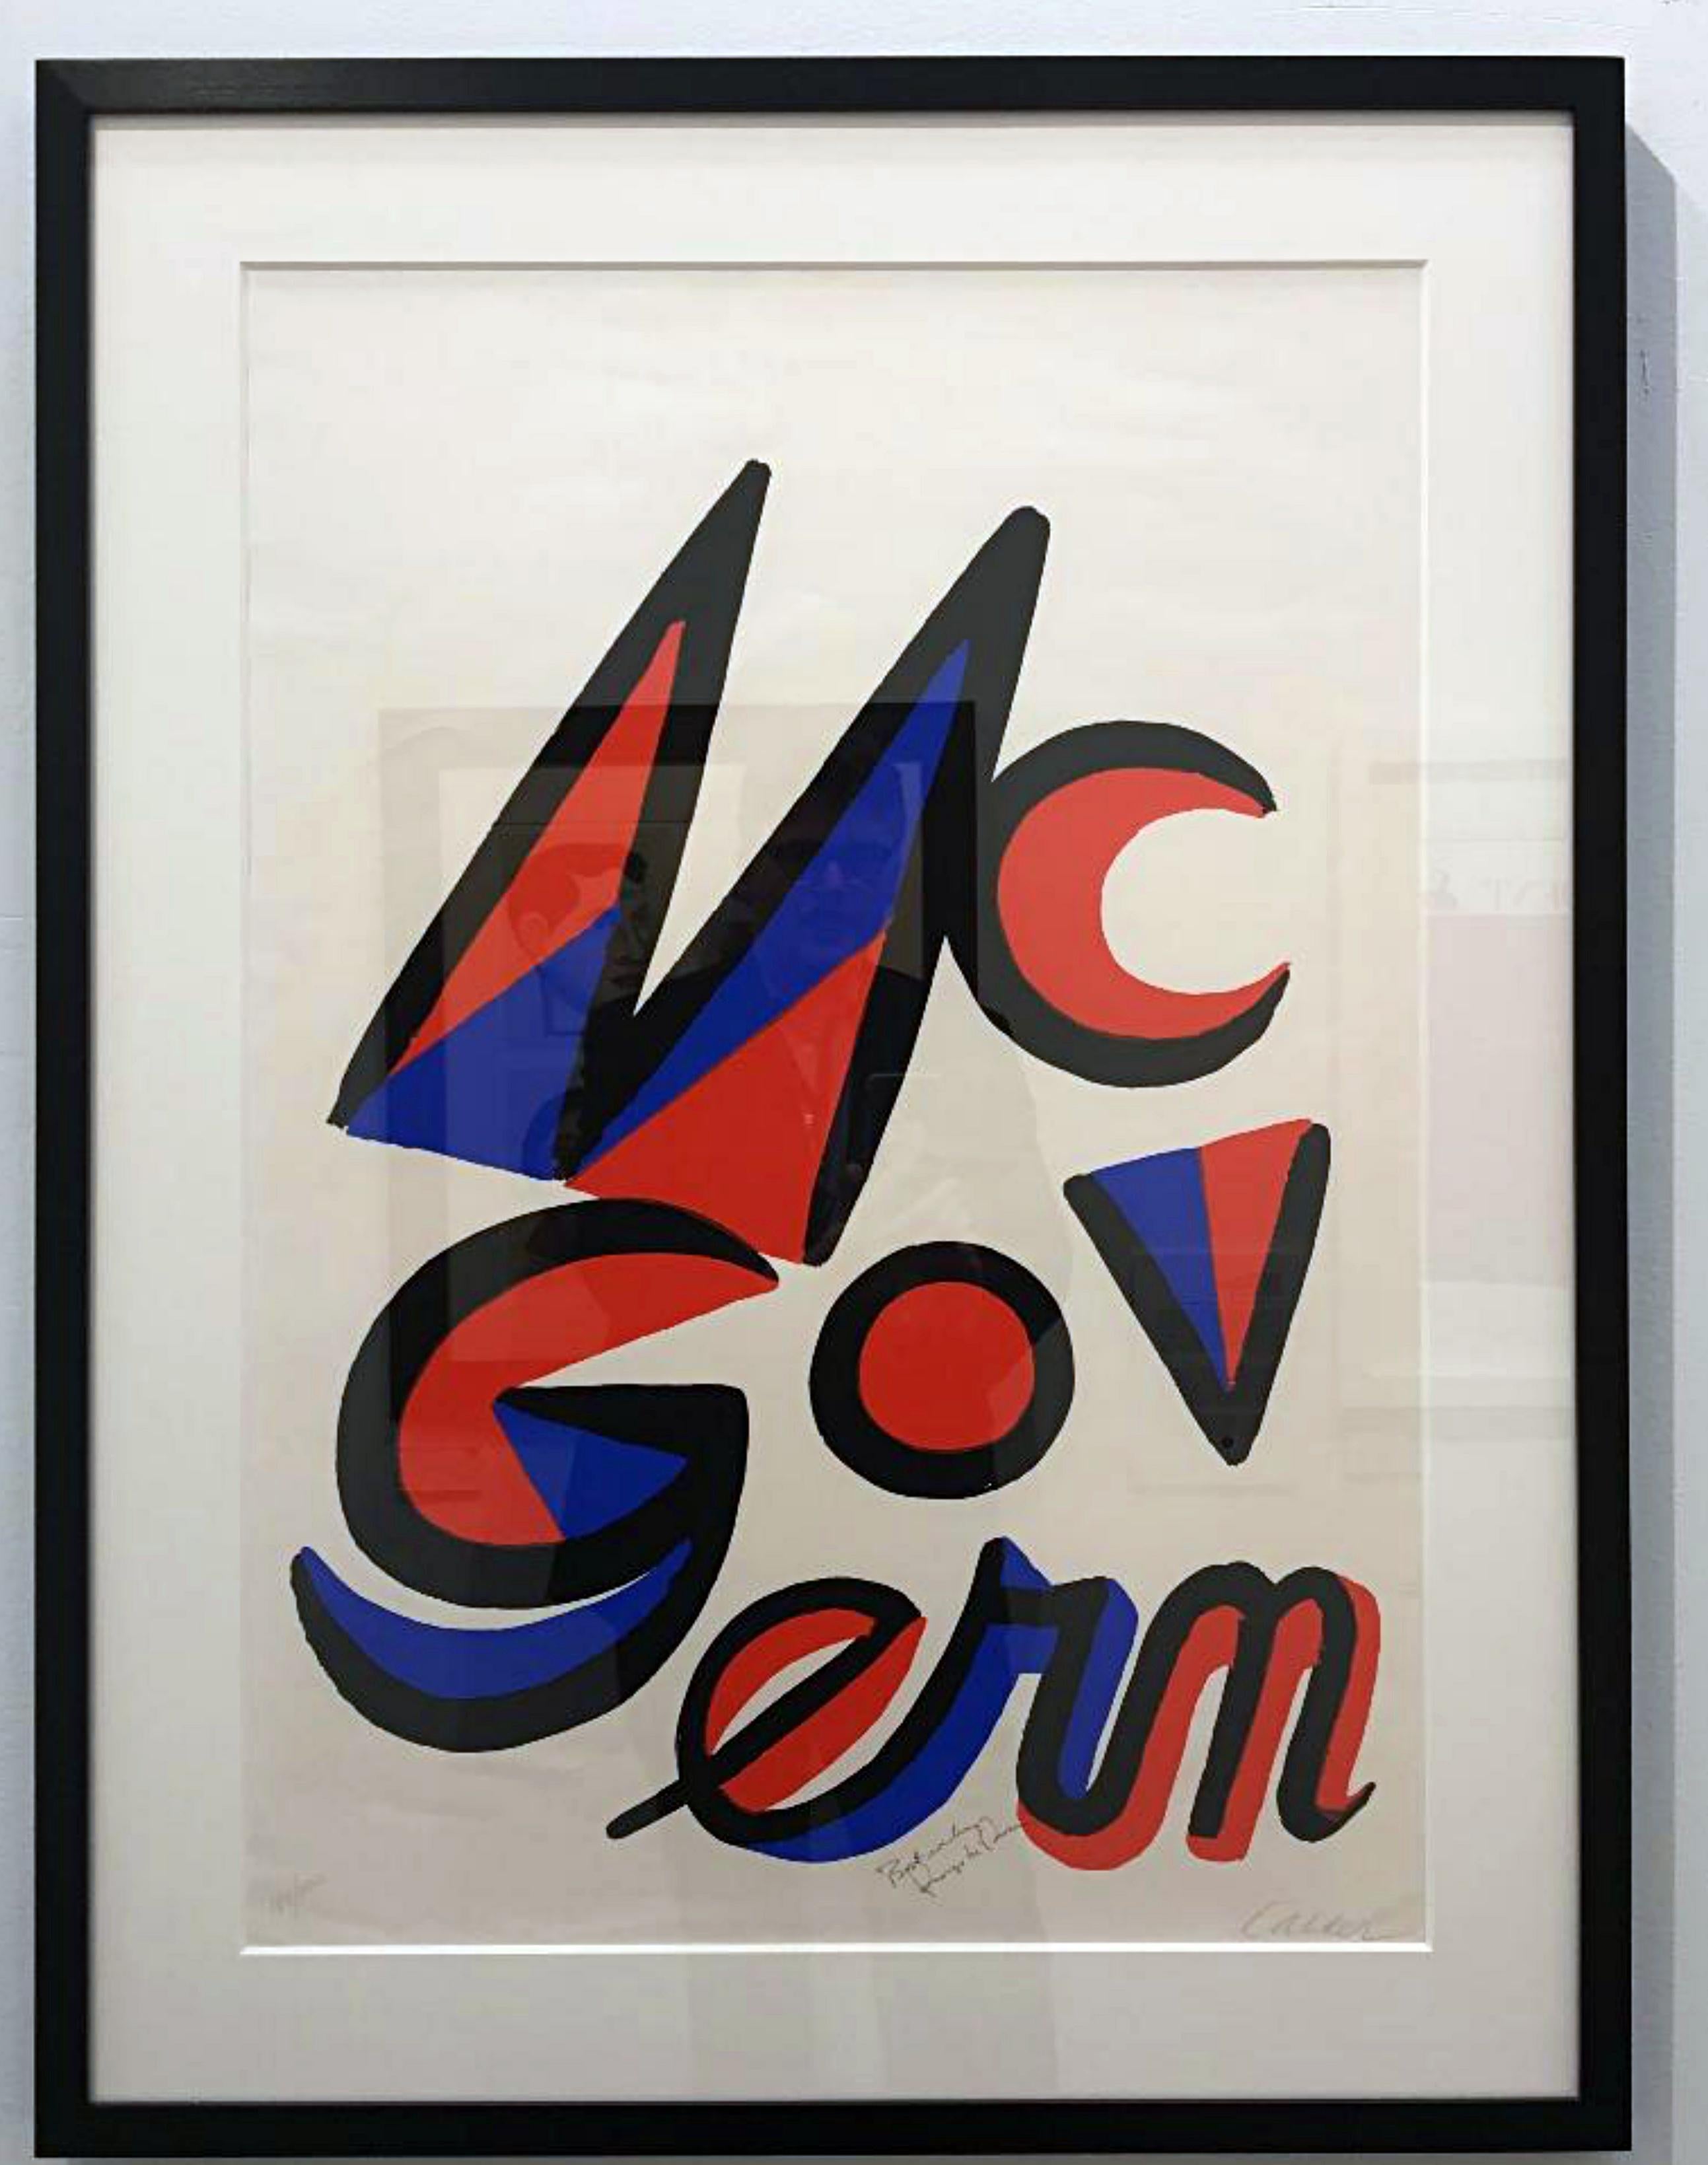 Alexander Calder
McGovern for McGovernment (Unterzeichnet von Alexander Calder und George McGovern), 1972
Lithografie auf Velin mit geriffeltem Rand. Von Calder handsigniert und nummeriert, von George McGovern beschriftet und signiert. Blindstempel